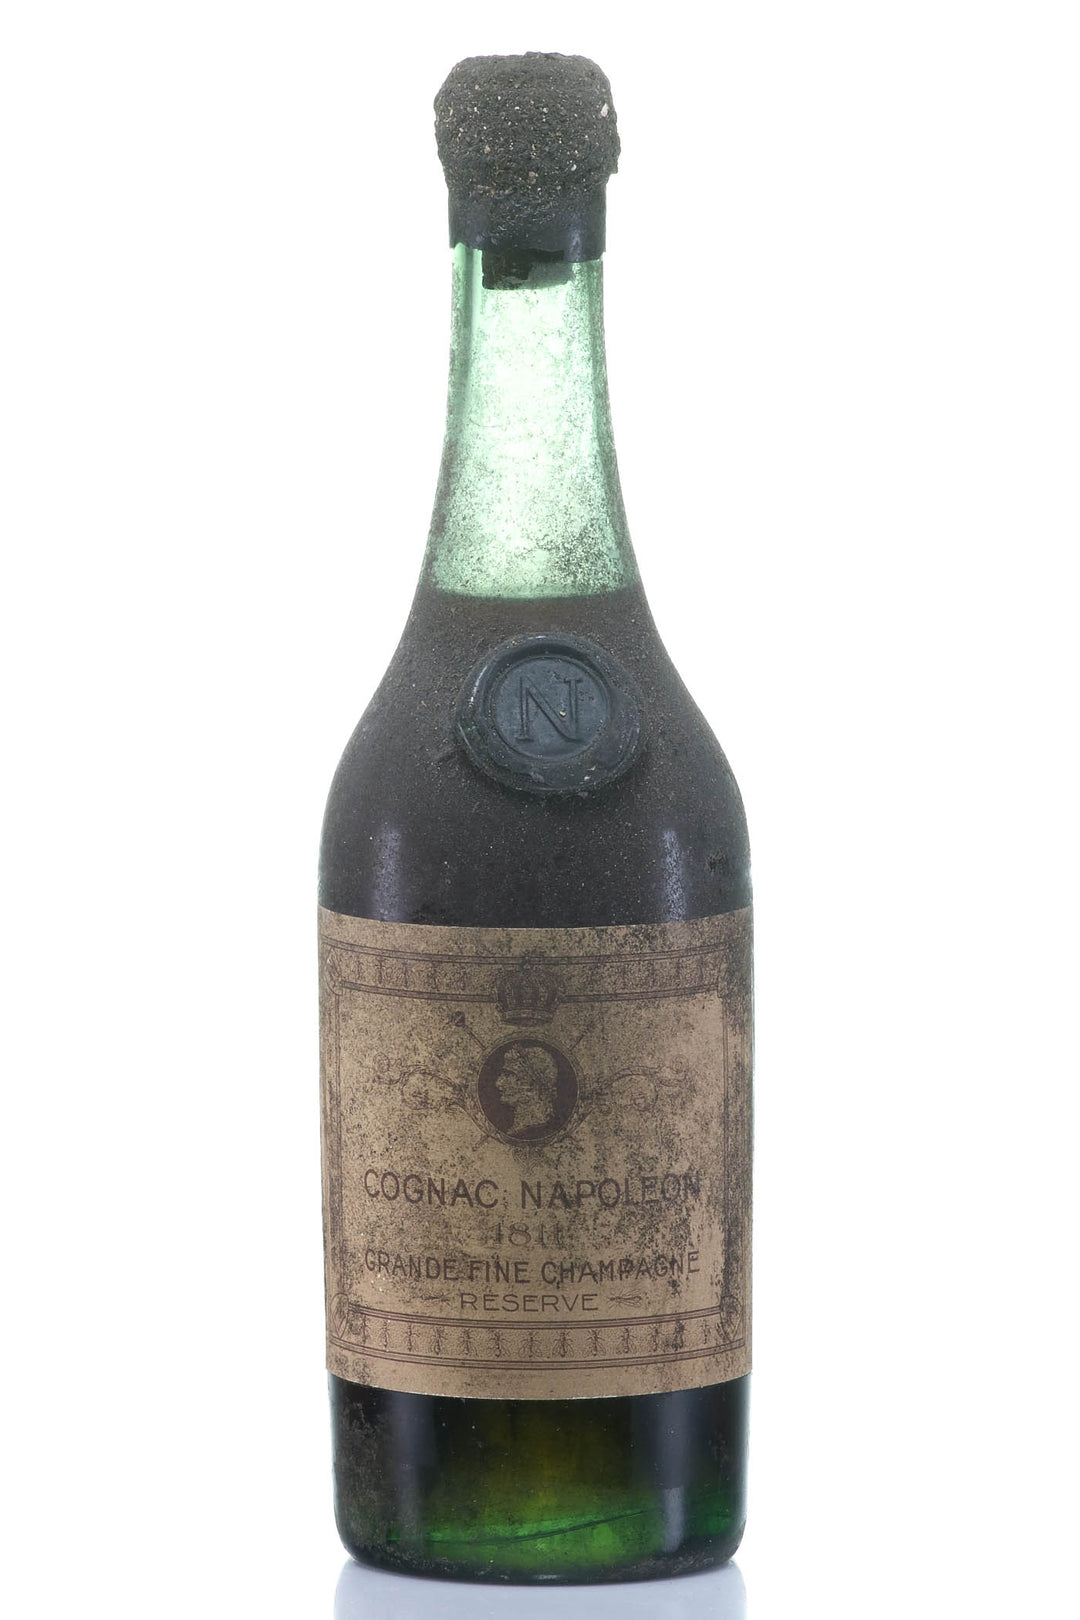 1811 Napoléon Réserve Cognac, Grande Fine Champagne - Rue Pinard